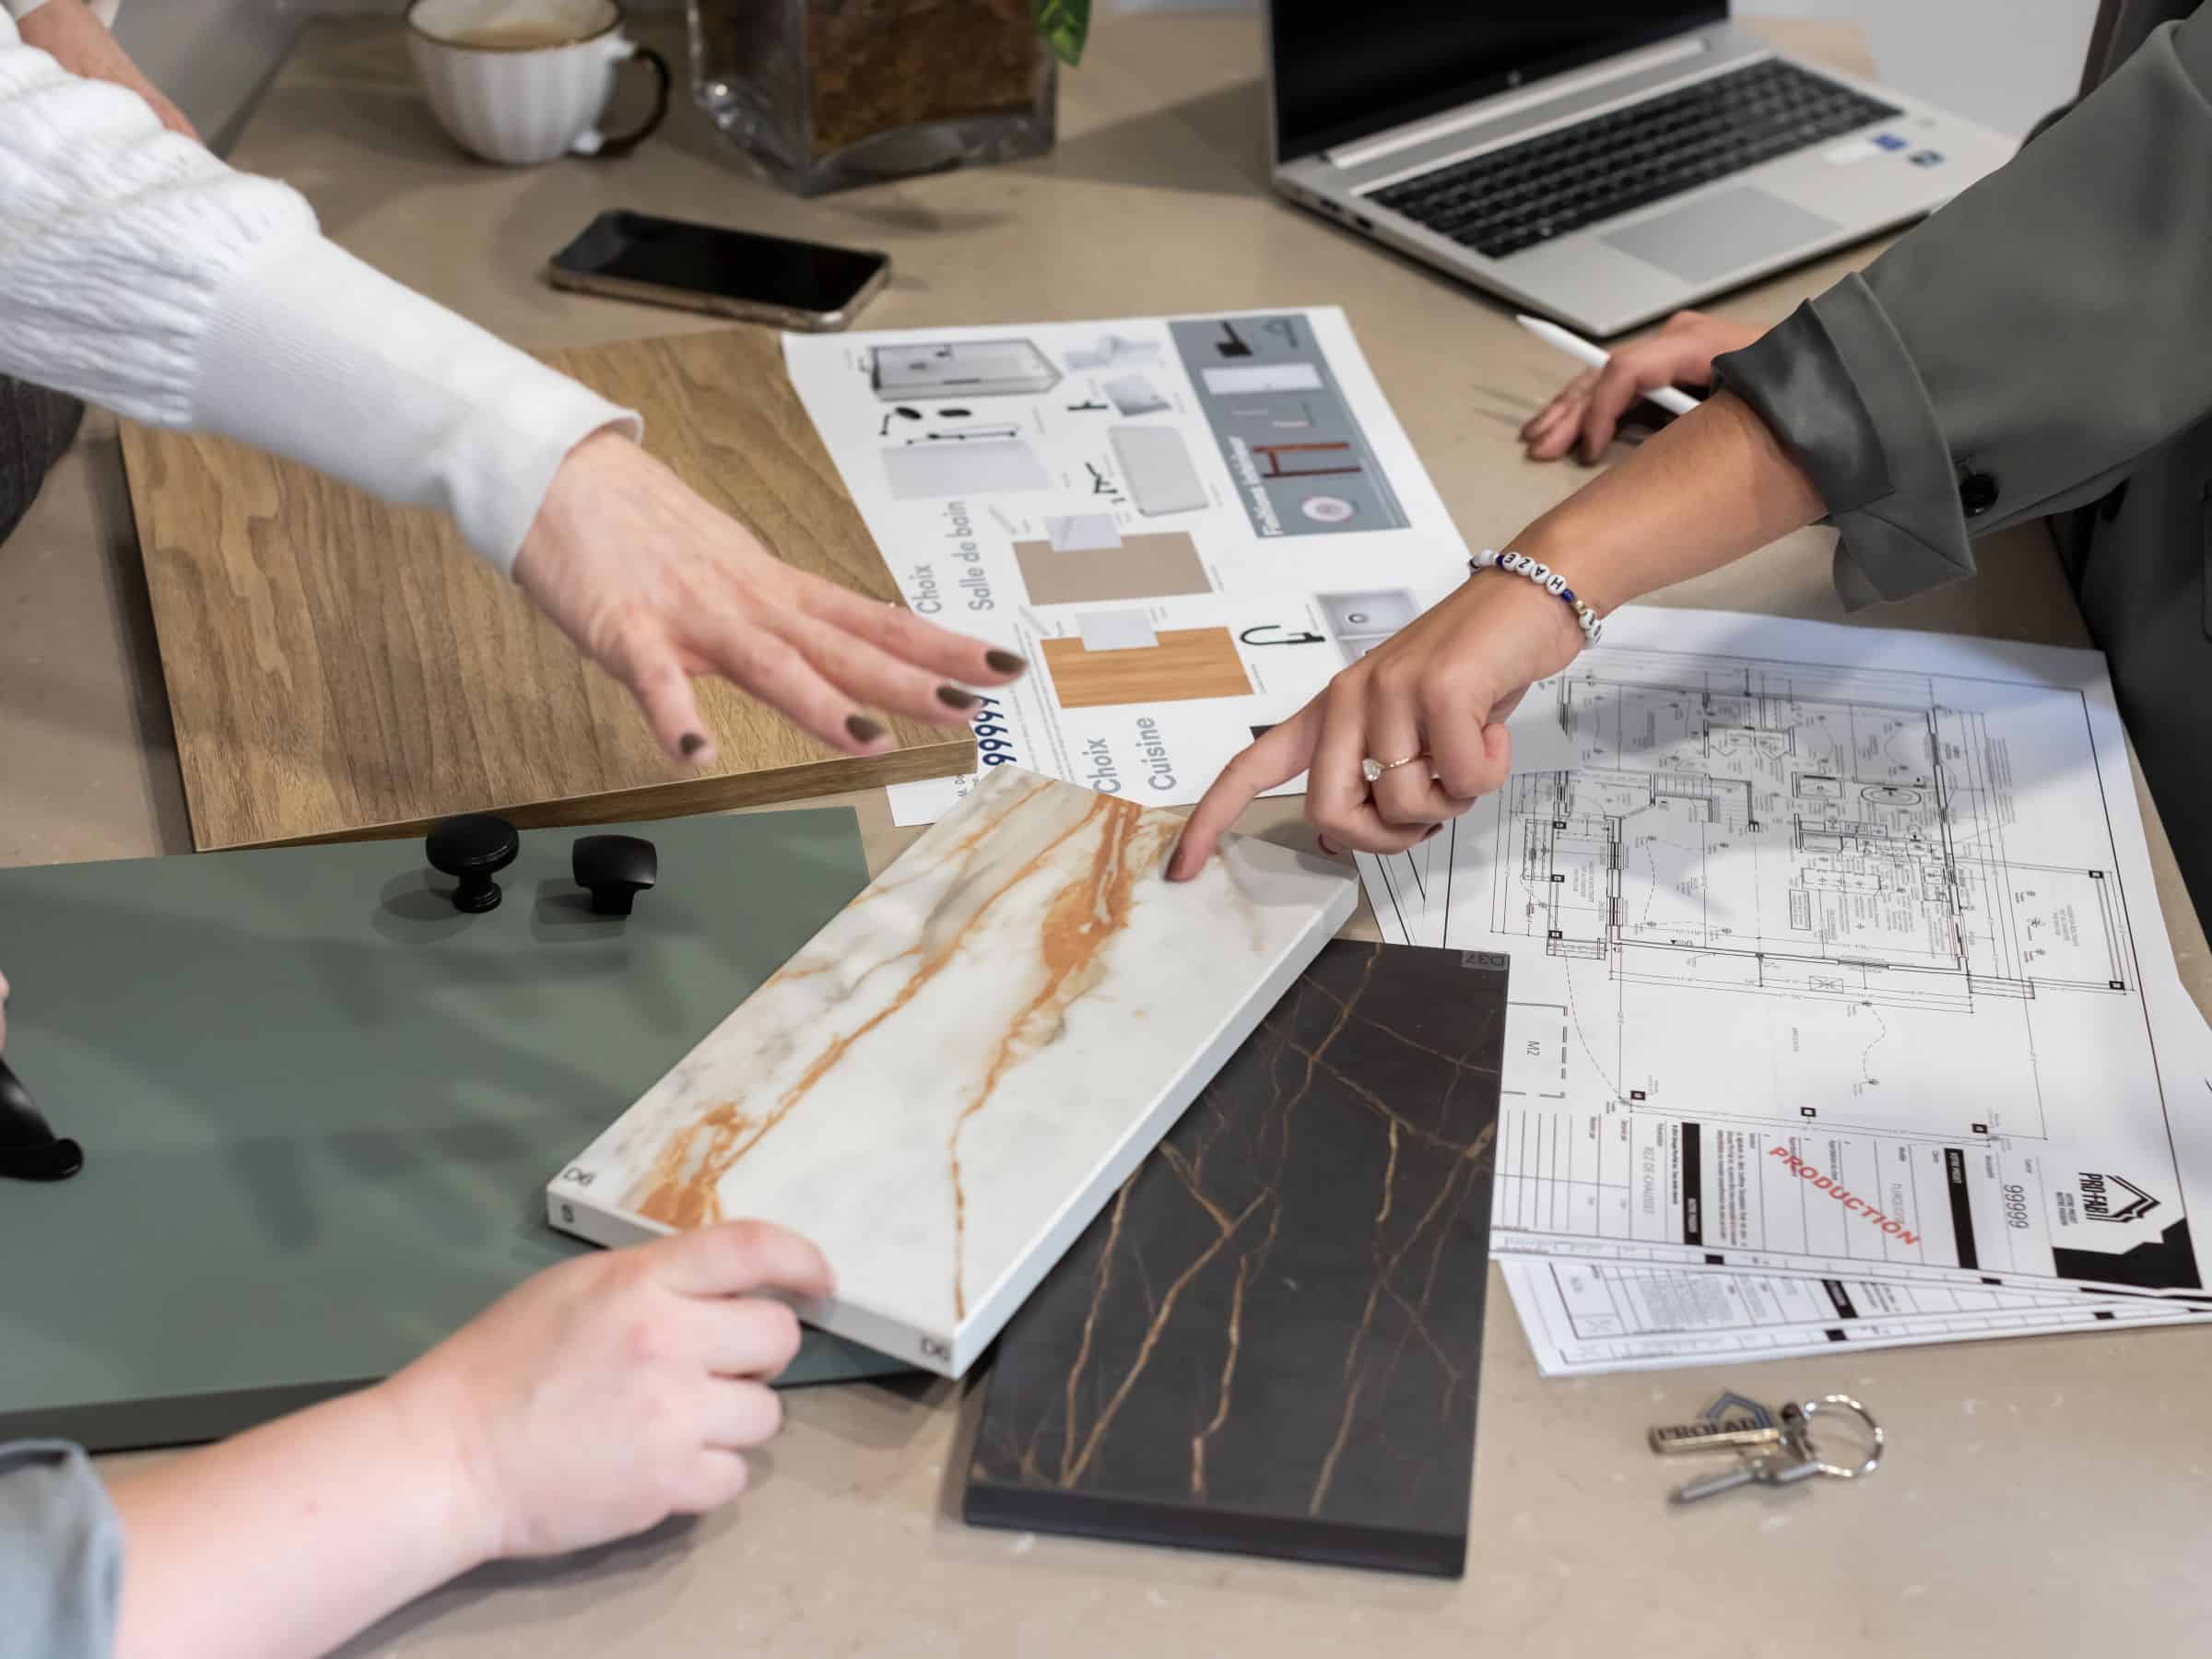 Plans et échantillons pour la construction d'une maison préfabriquée disposée sur une table.